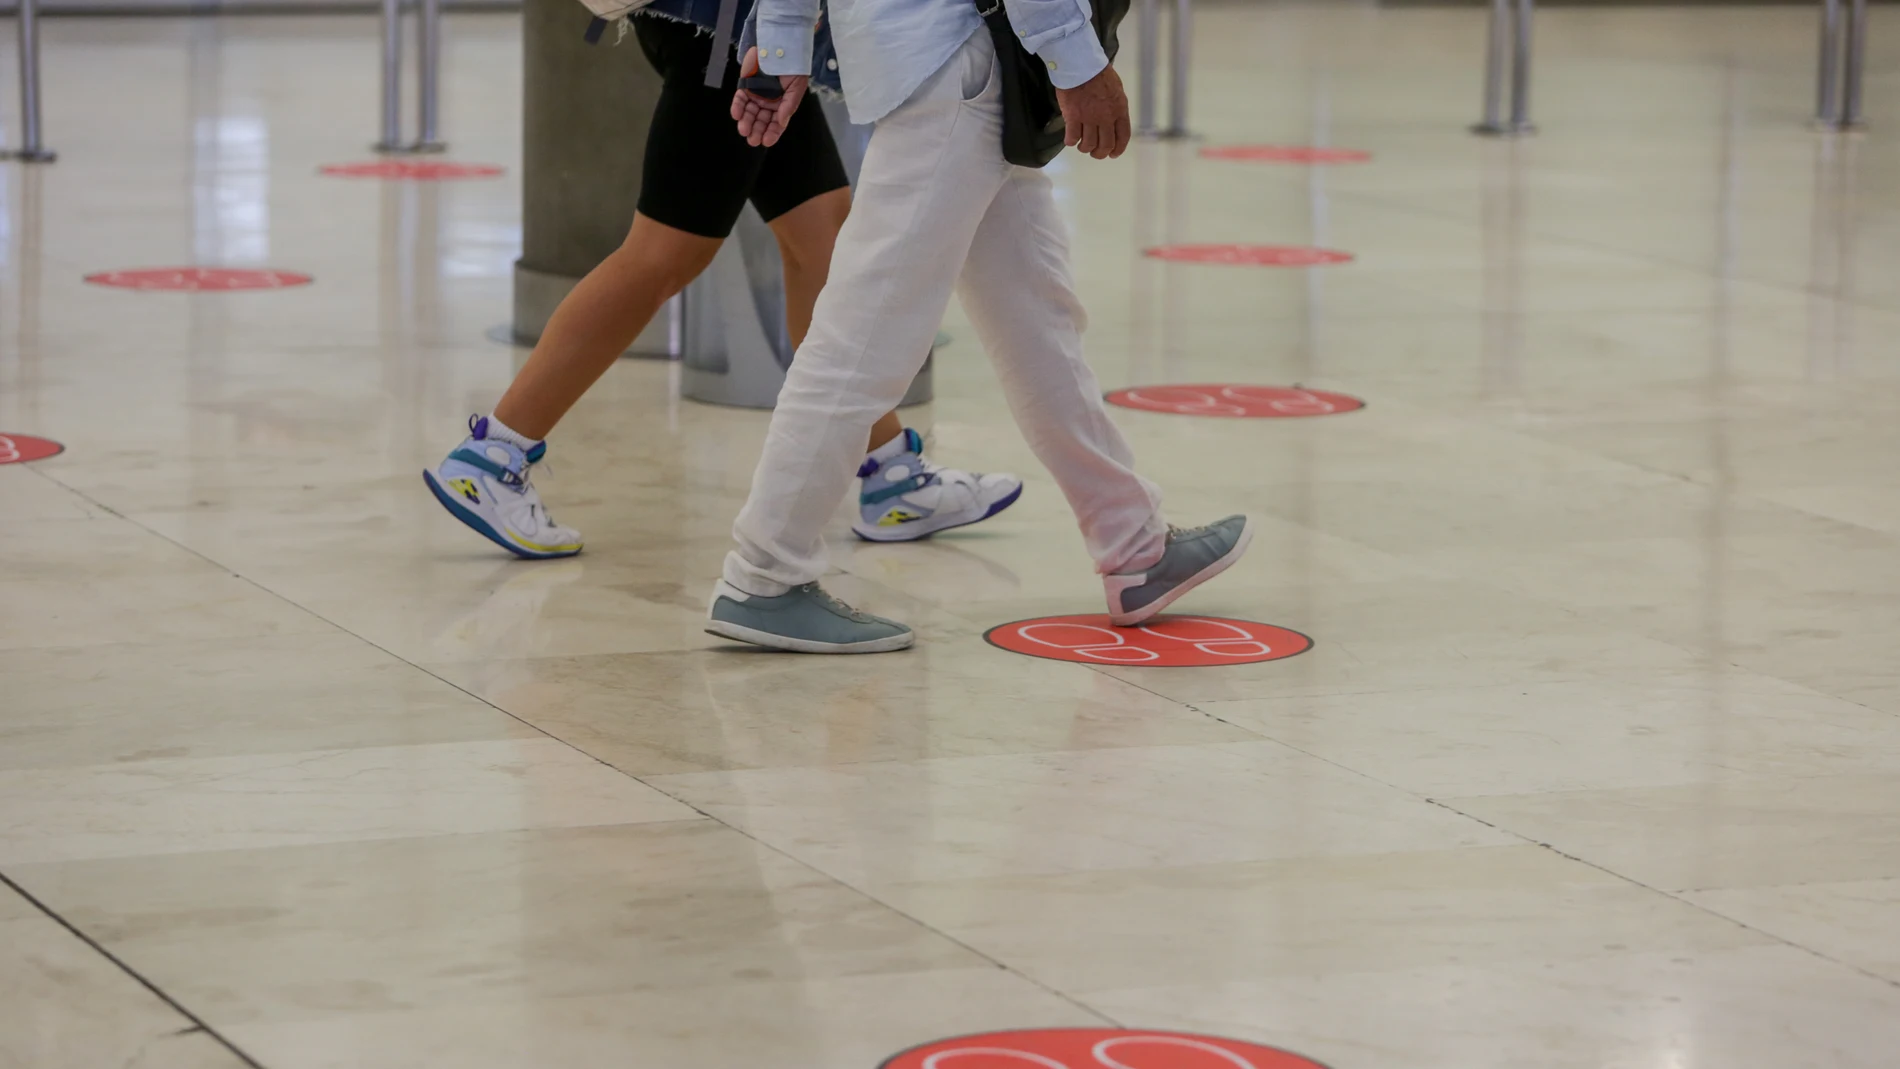 El Aeropuerto de Barajas estrena nuevas medidas de control tras el fin del estado de alarma